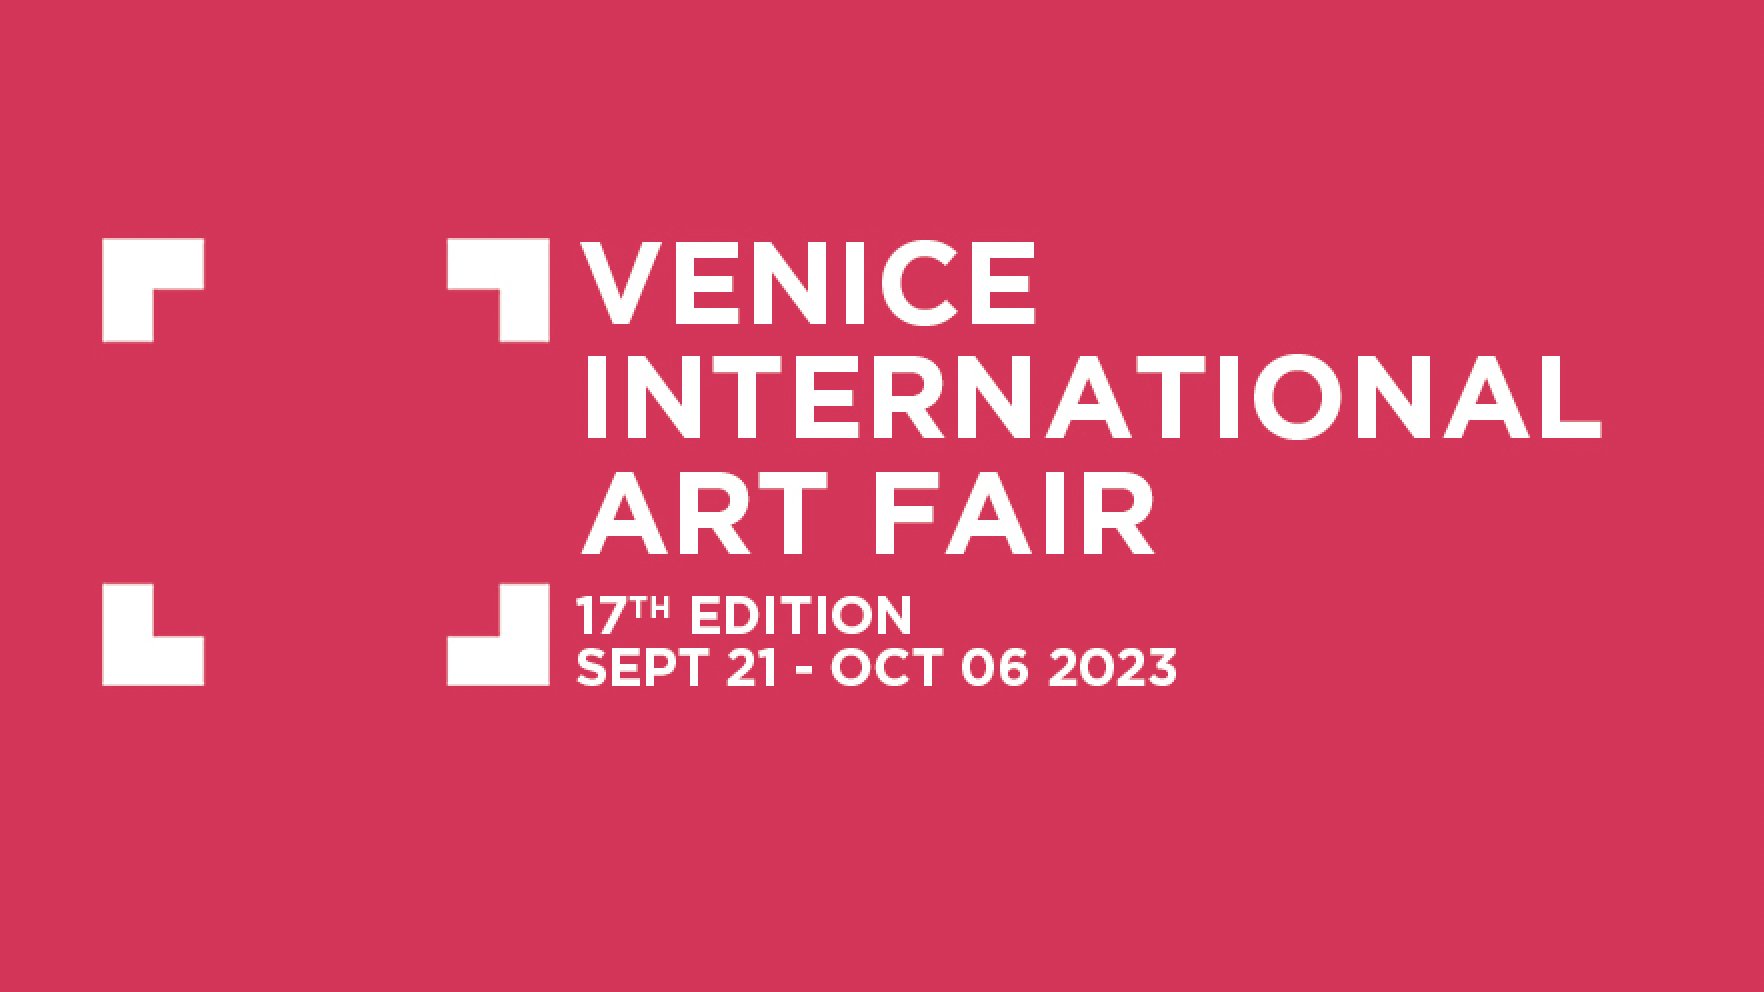  Venice International Art Fair 2023